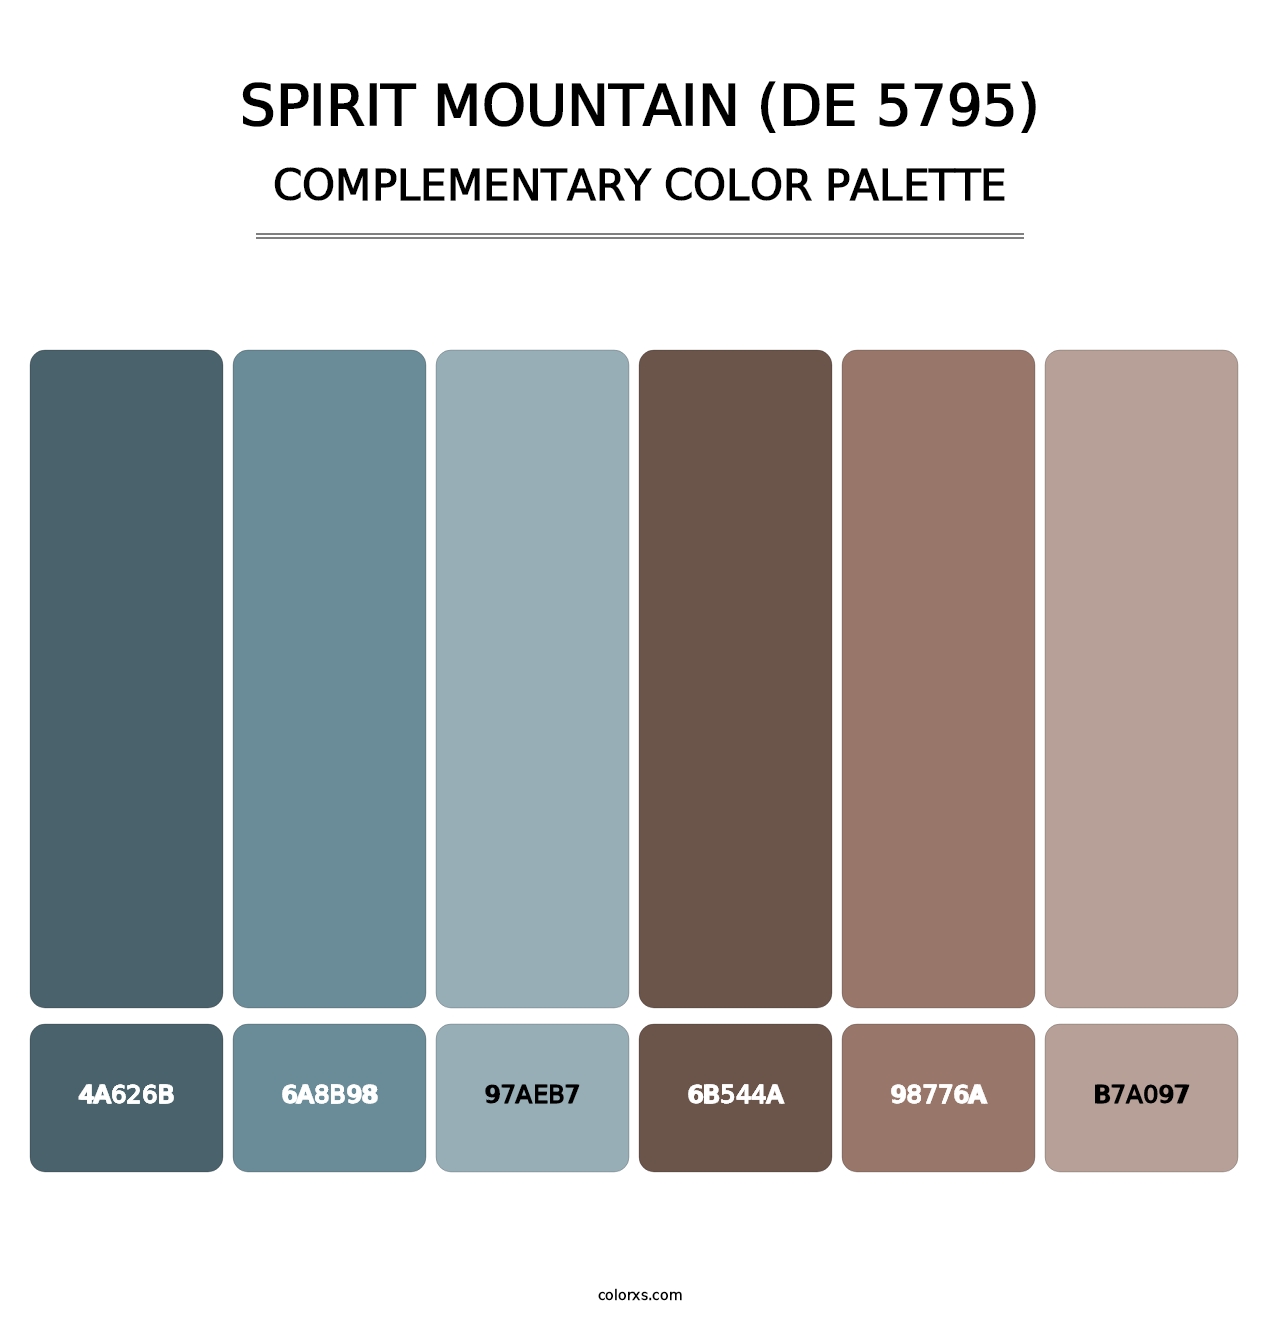 Spirit Mountain (DE 5795) - Complementary Color Palette